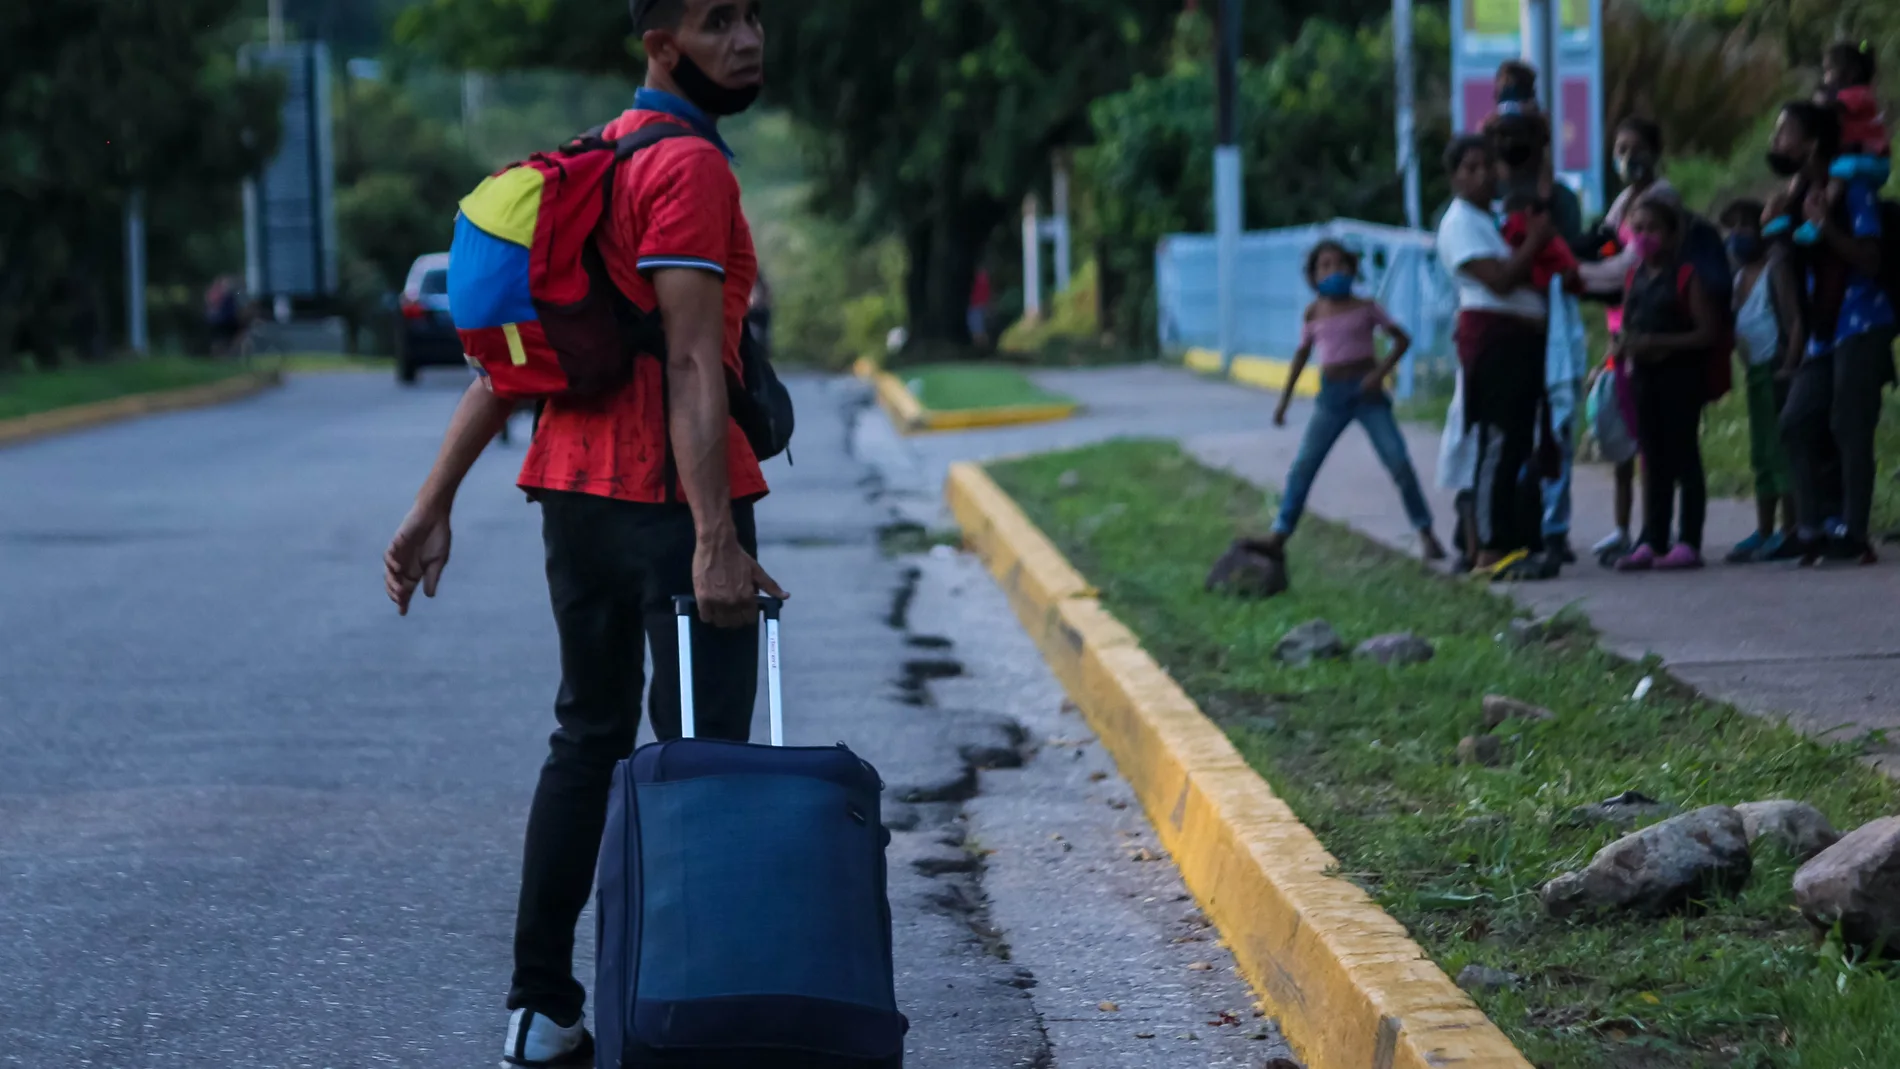 AME636. SAN CRISTÓBAL (VENEZUELA), 12/10/2020.- Un grupo de venezolanos camina por una calle con maletas y bolsos, el 7 de octubre de 2020, en San Cristóbal, estado Táchira (Venezuela). Dejarlo todo sigue siendo la opción de cientos de venezolanos que, agobiados por la pobreza extrema, recorren hasta más de mil kilómetros andando con la esperanza de salir del país, así esto implique días de caminata y un cúmulo de riesgos en la vía. EFE/ Johnny Parra